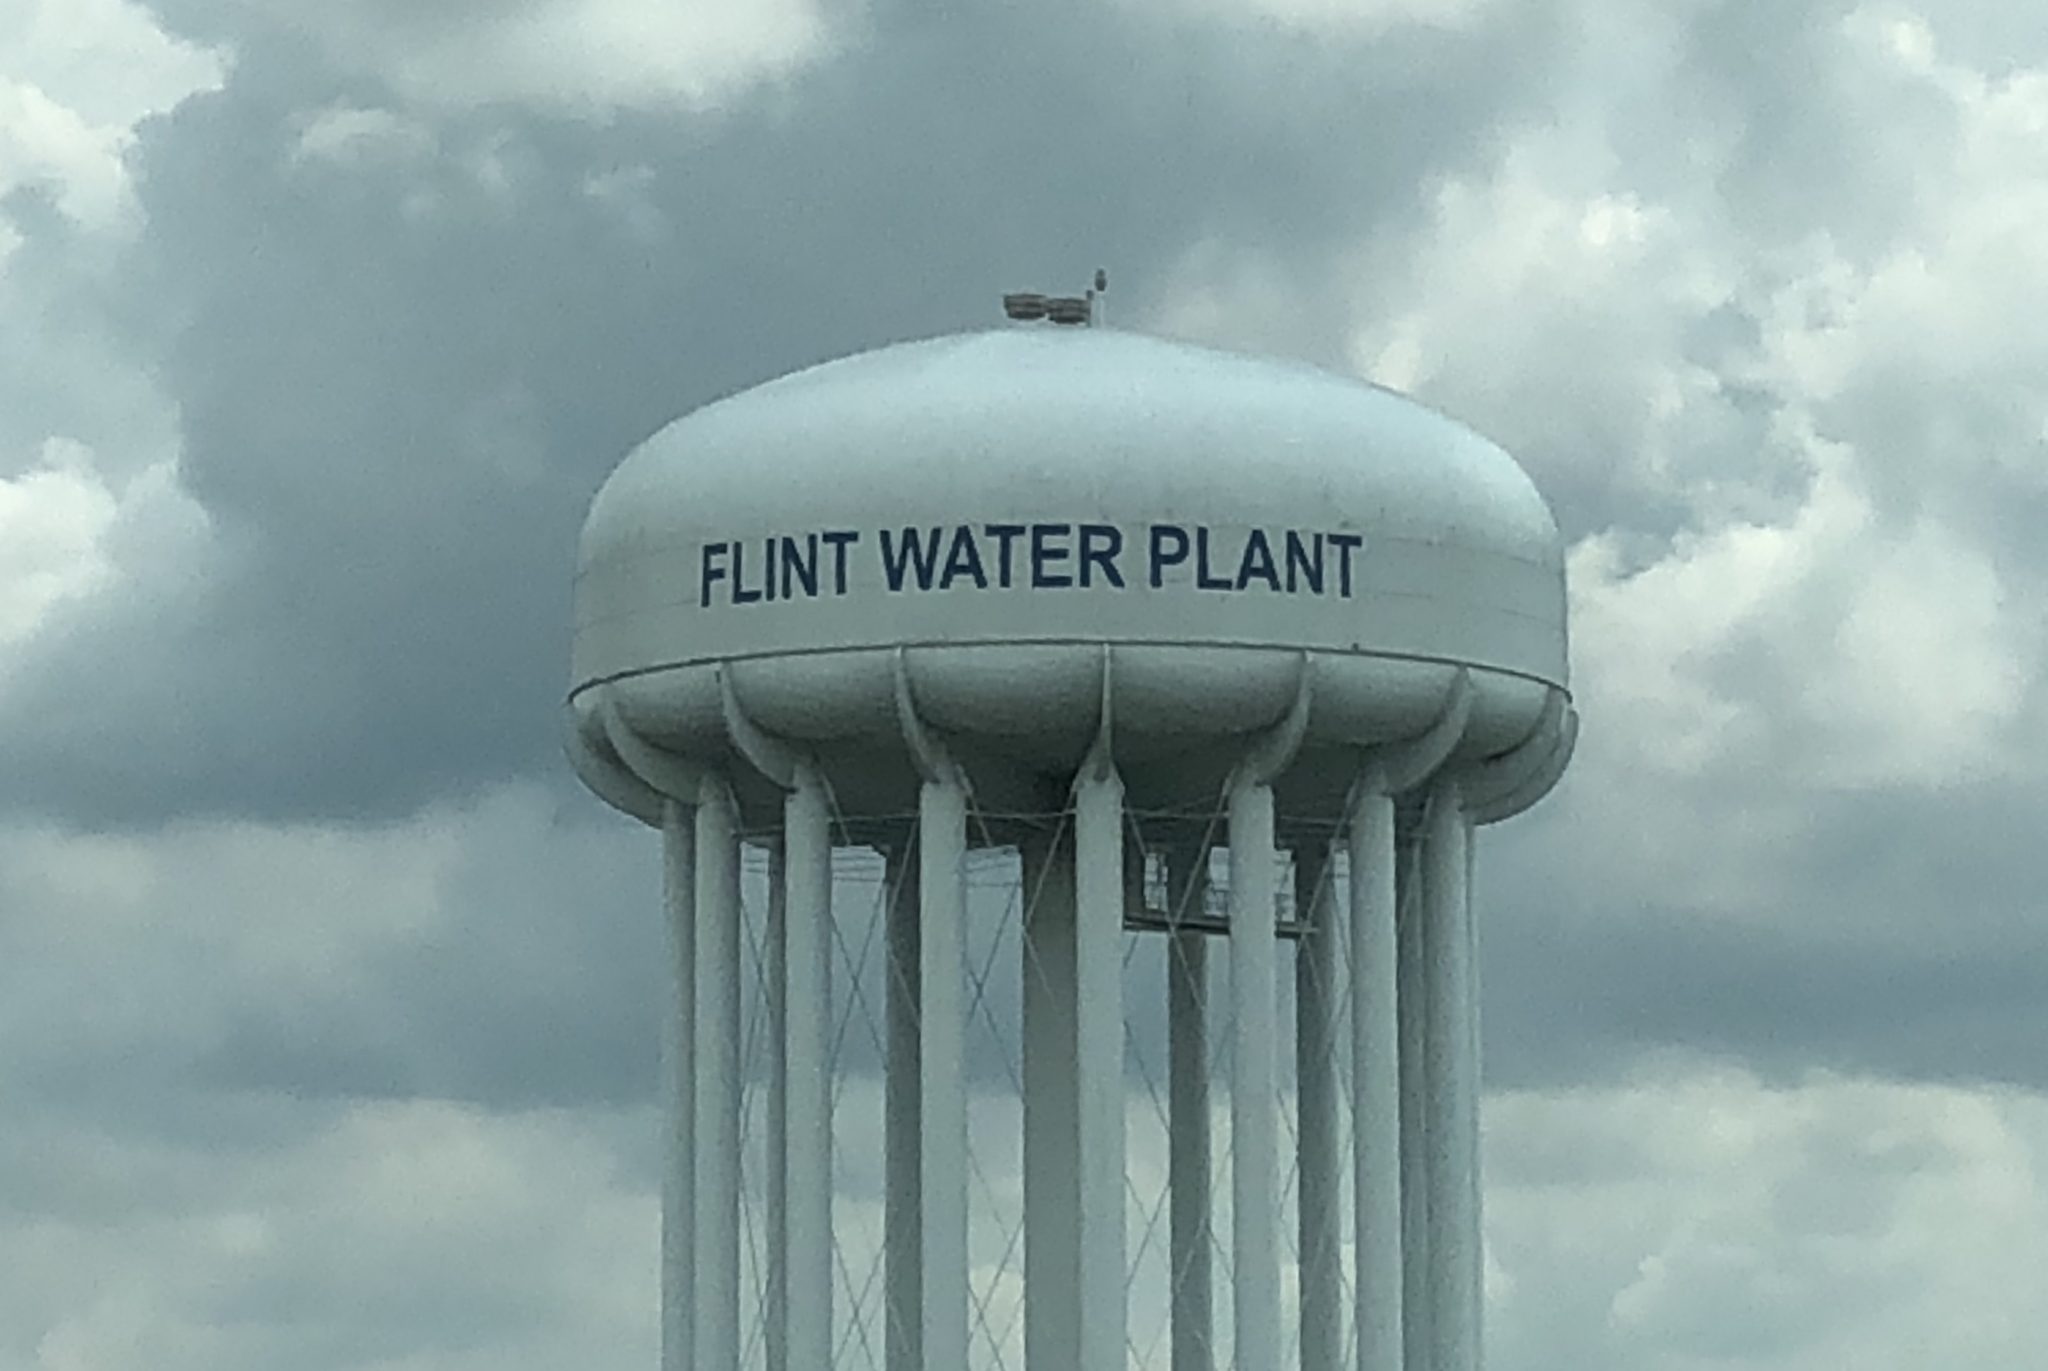 The Flint Water Plant water tower in Flint, Mich.